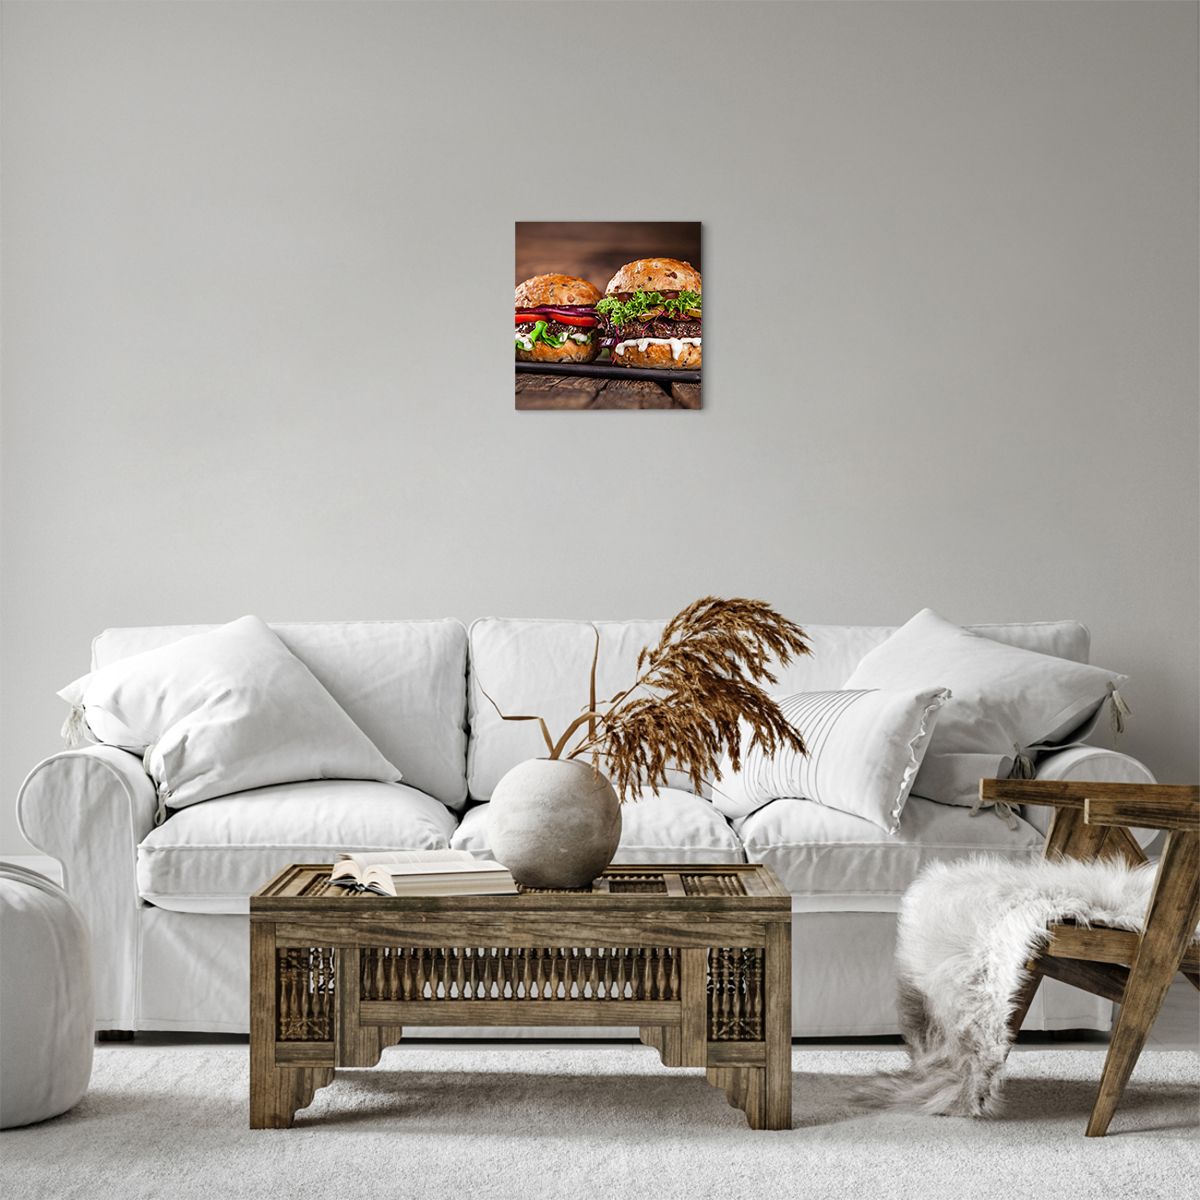 Obrazy na płótnie Gastronomia, Obrazy na płótnie Hamburger, Obrazy na płótnie Kulinarne, Obrazy na płótnie Fast Food, Obrazy na płótnie Kuchnia